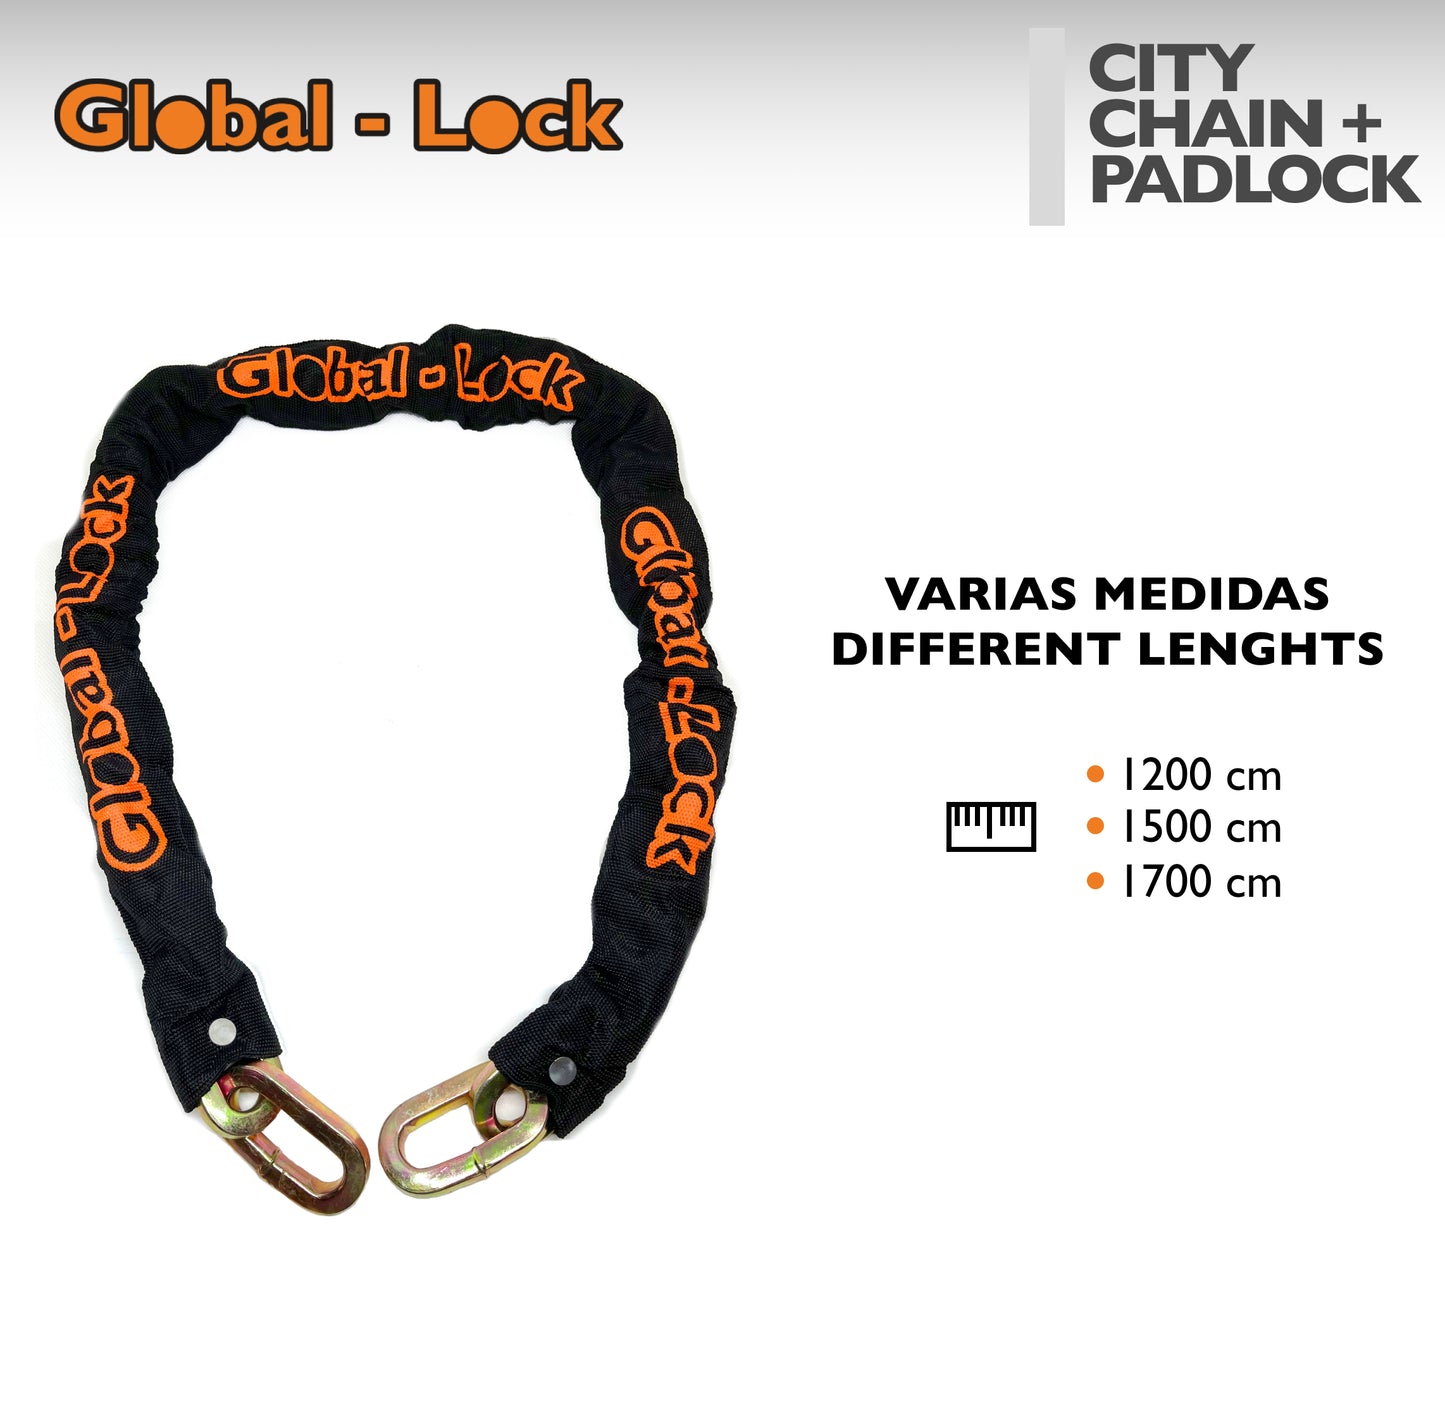 Global-Lock CITY chain + padlock kit